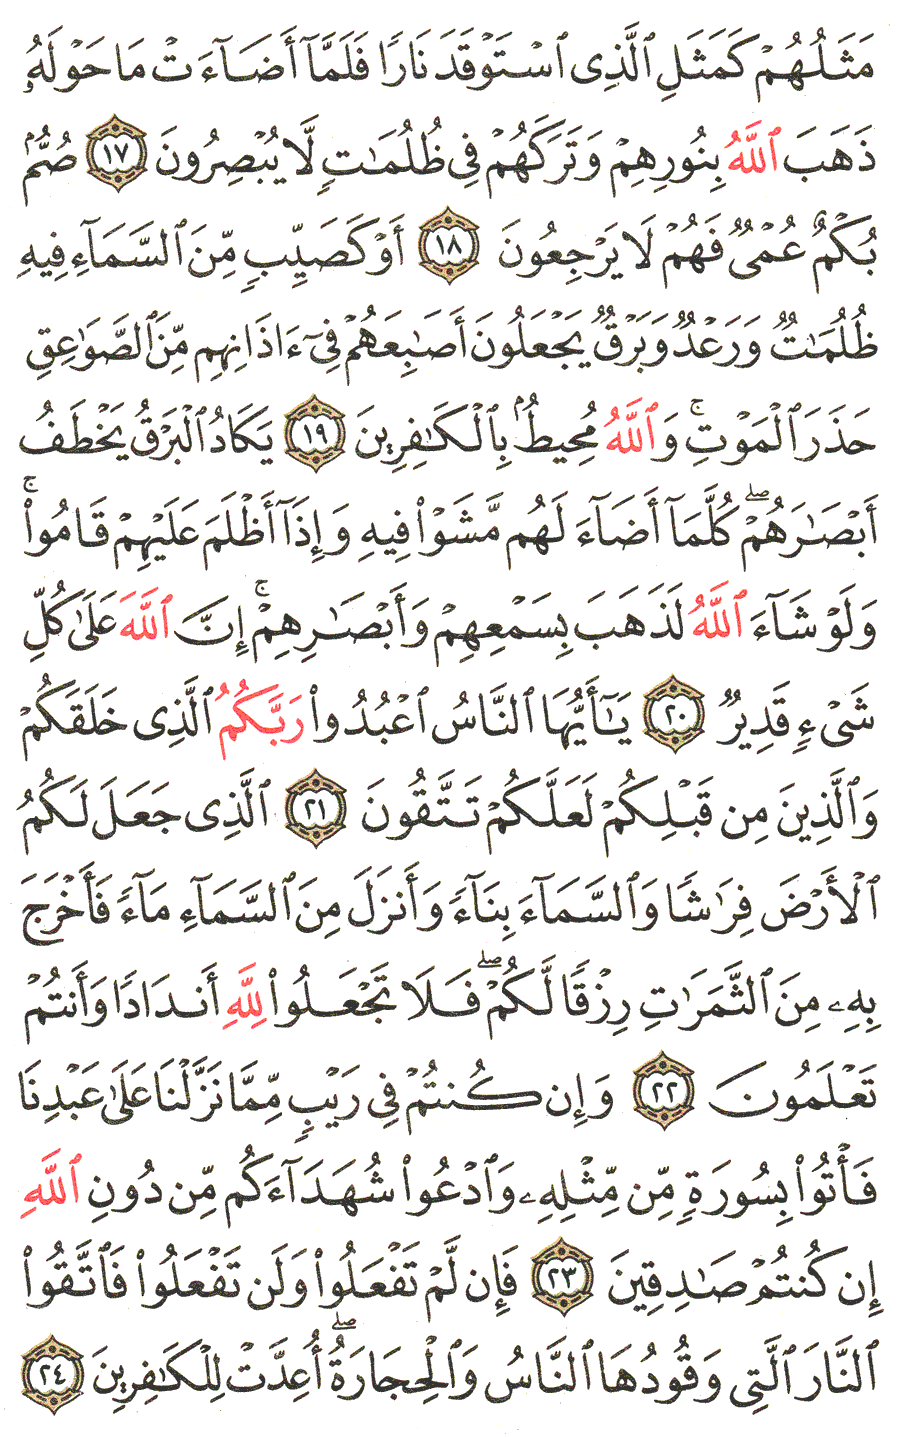 الصفحة رقم 4 من القرآن الكريم مكتوبة من المصحف